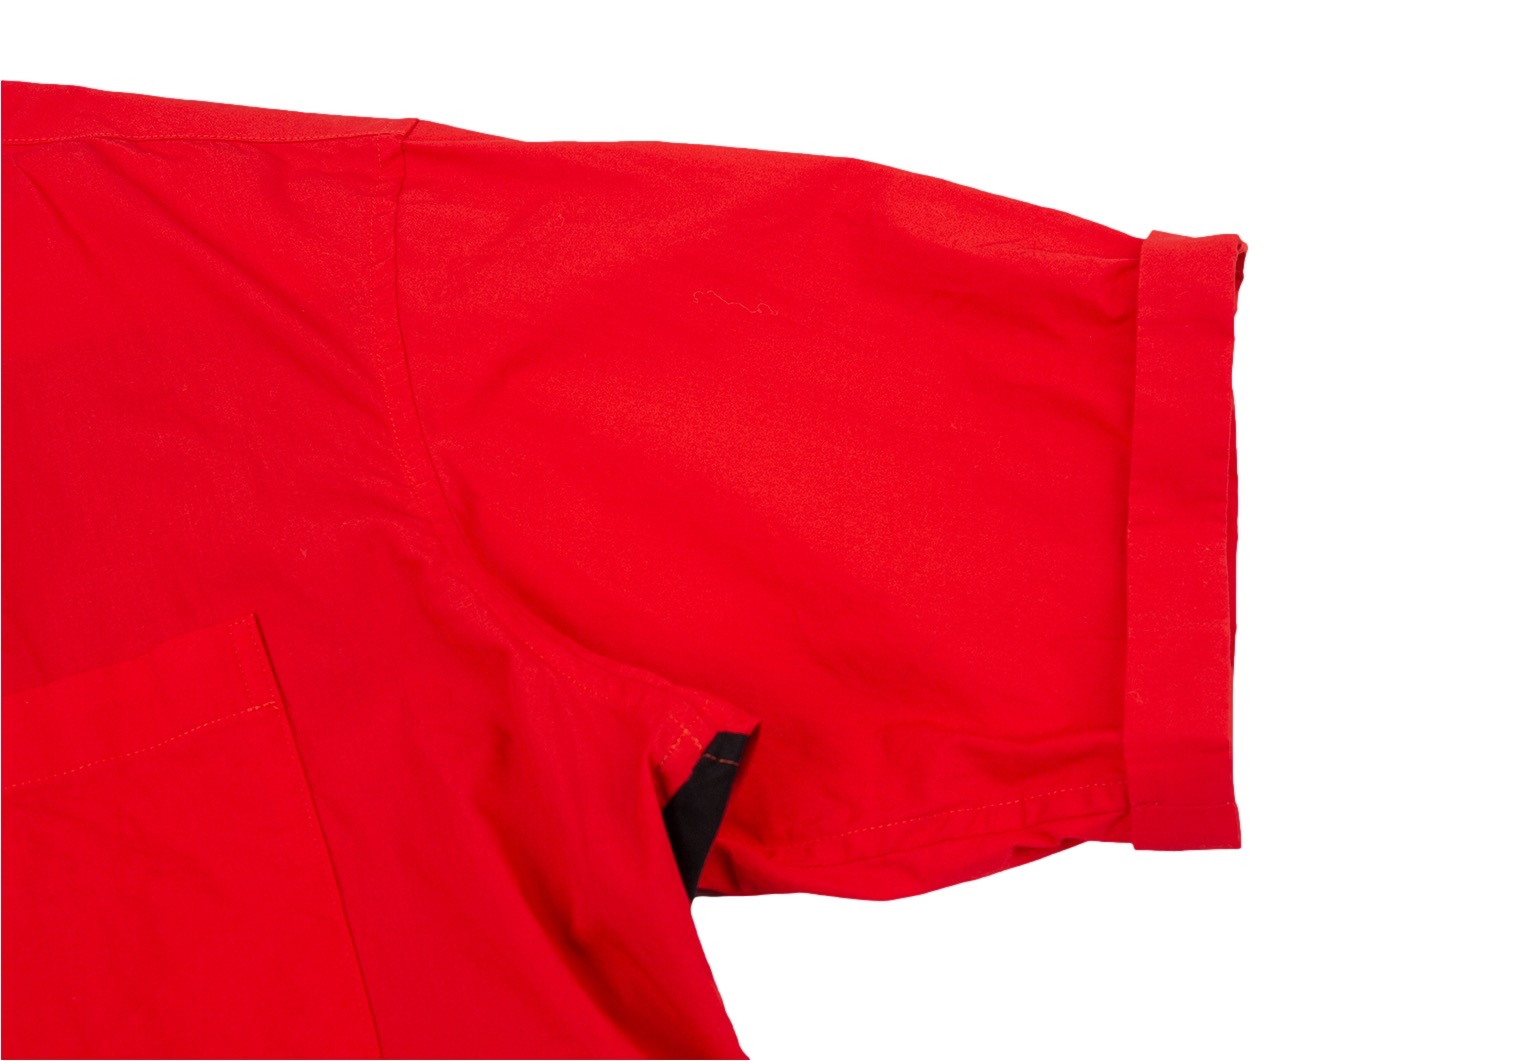 サイトs'yte バイカラー切替デザイン半袖シャツ 黒赤3